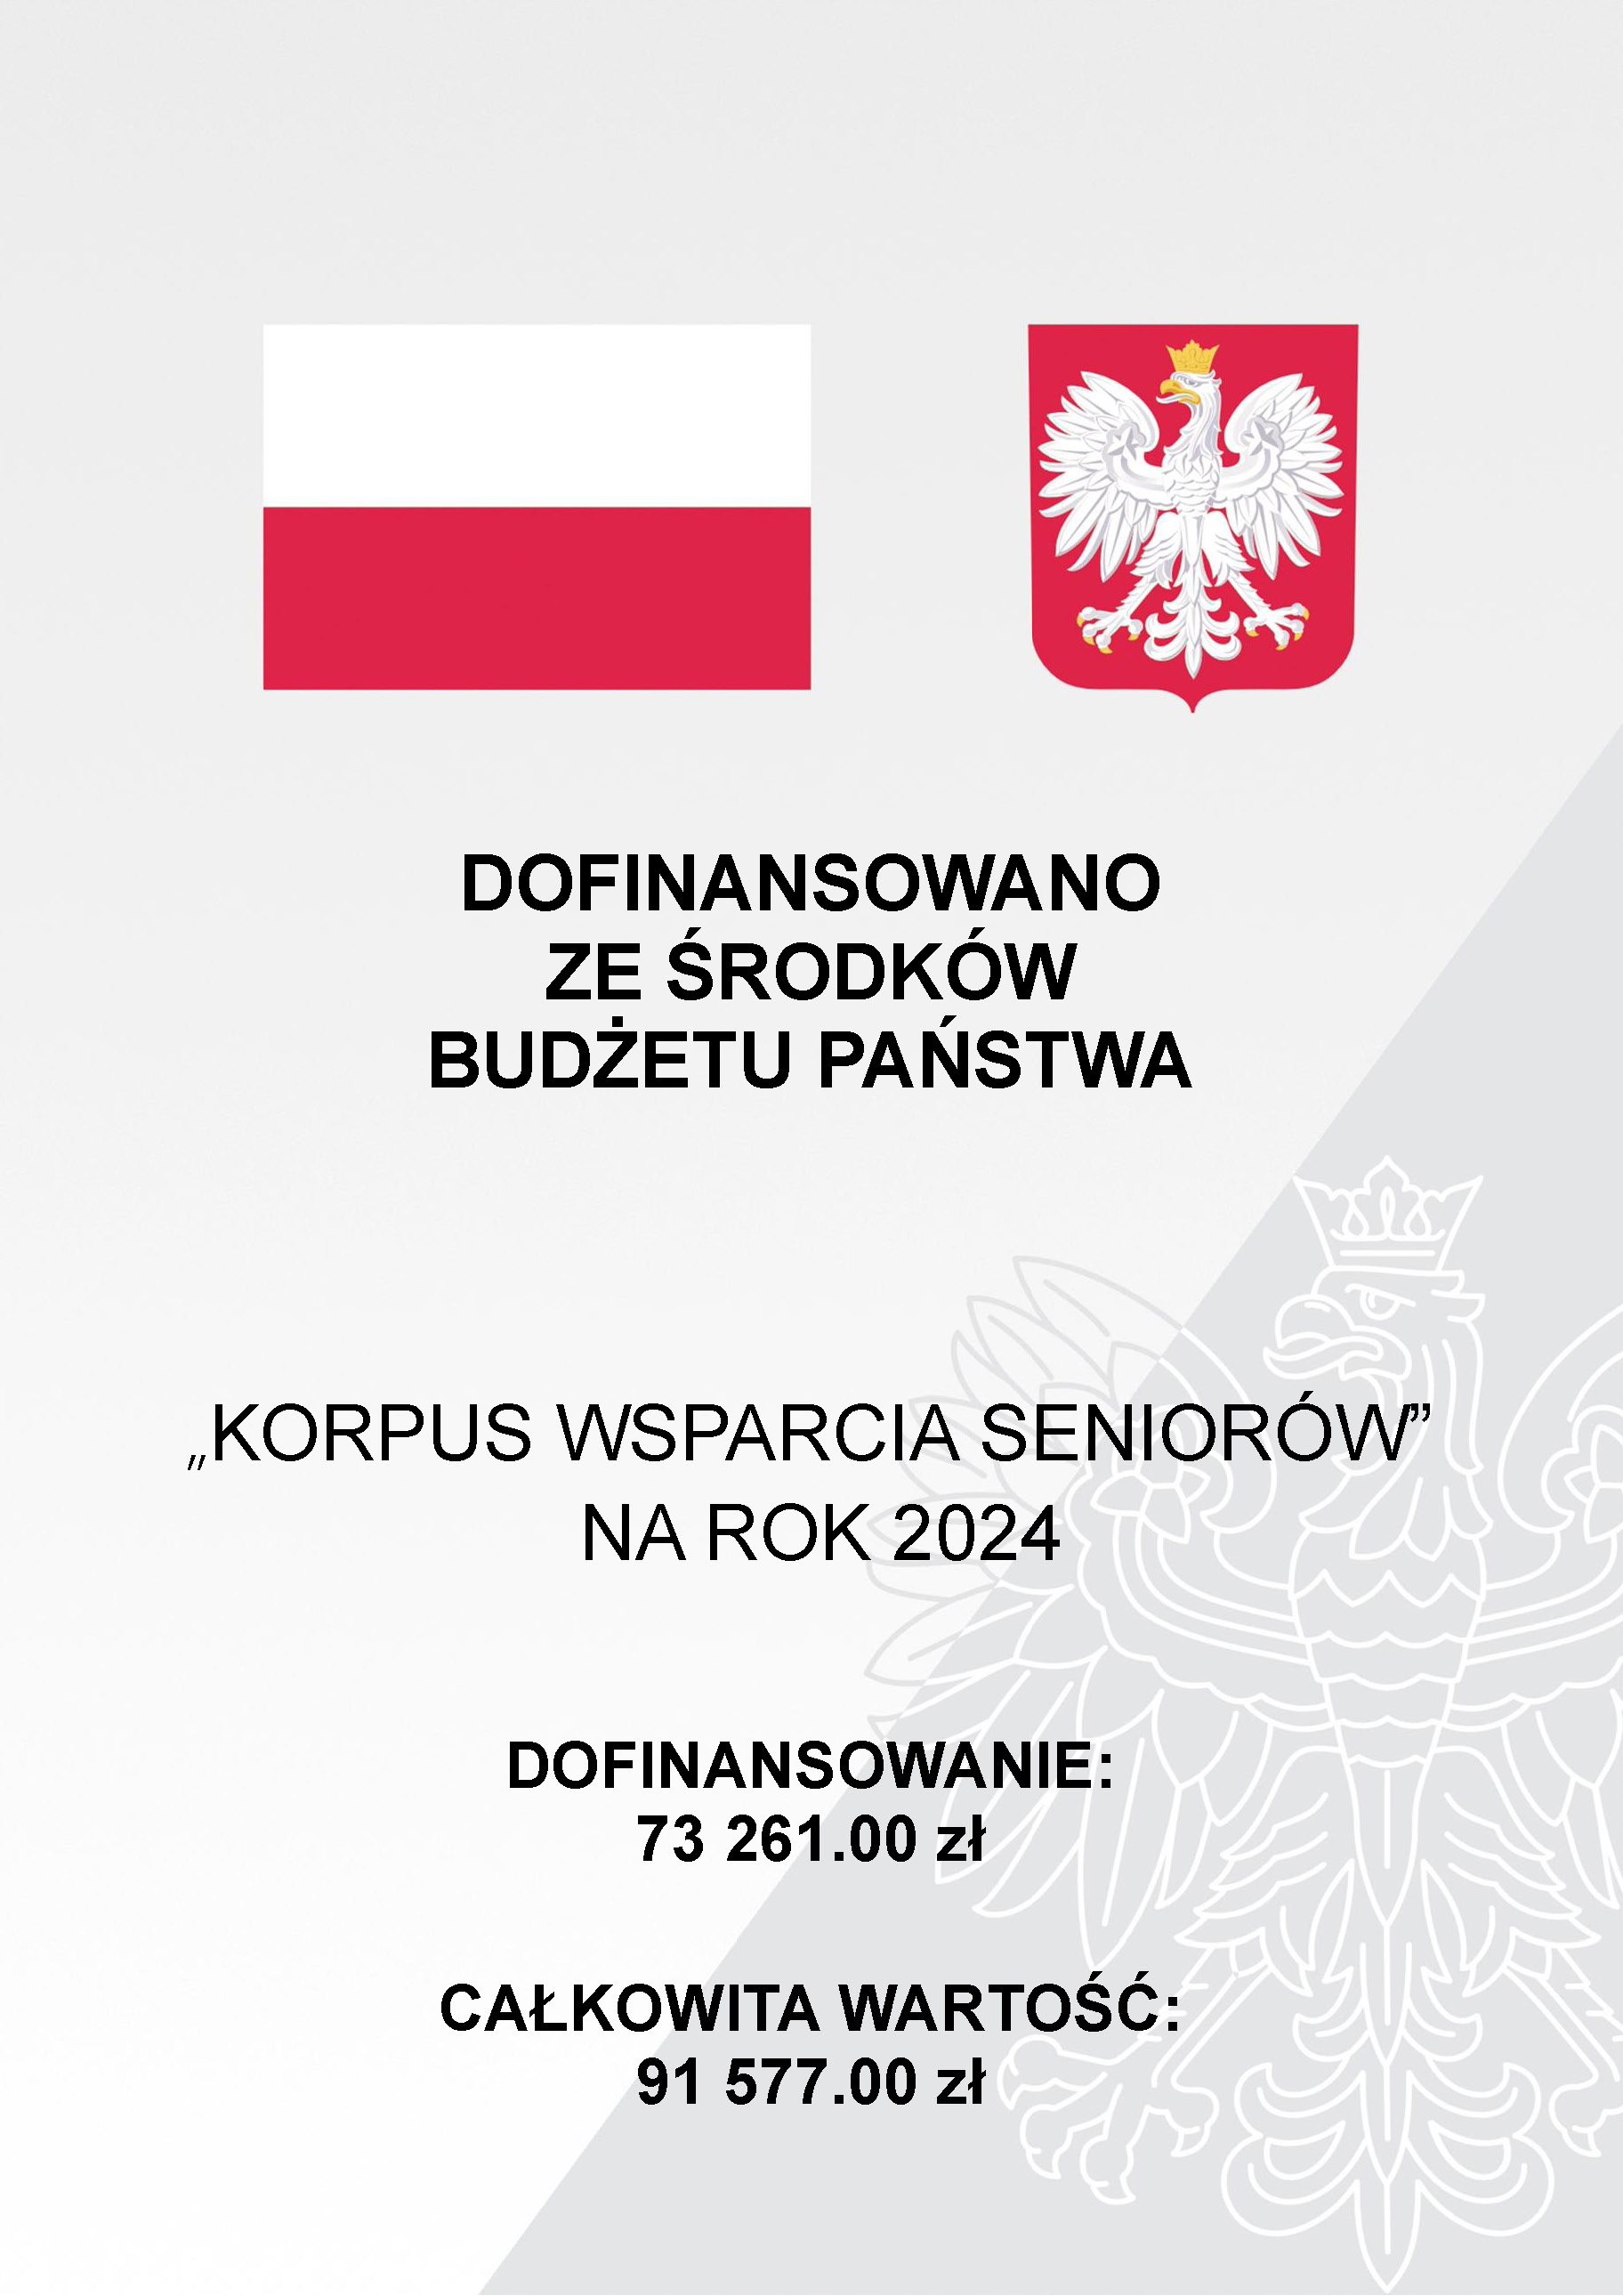 KORPUS WSPARCIA SENIORÓW - NA ROK 2024